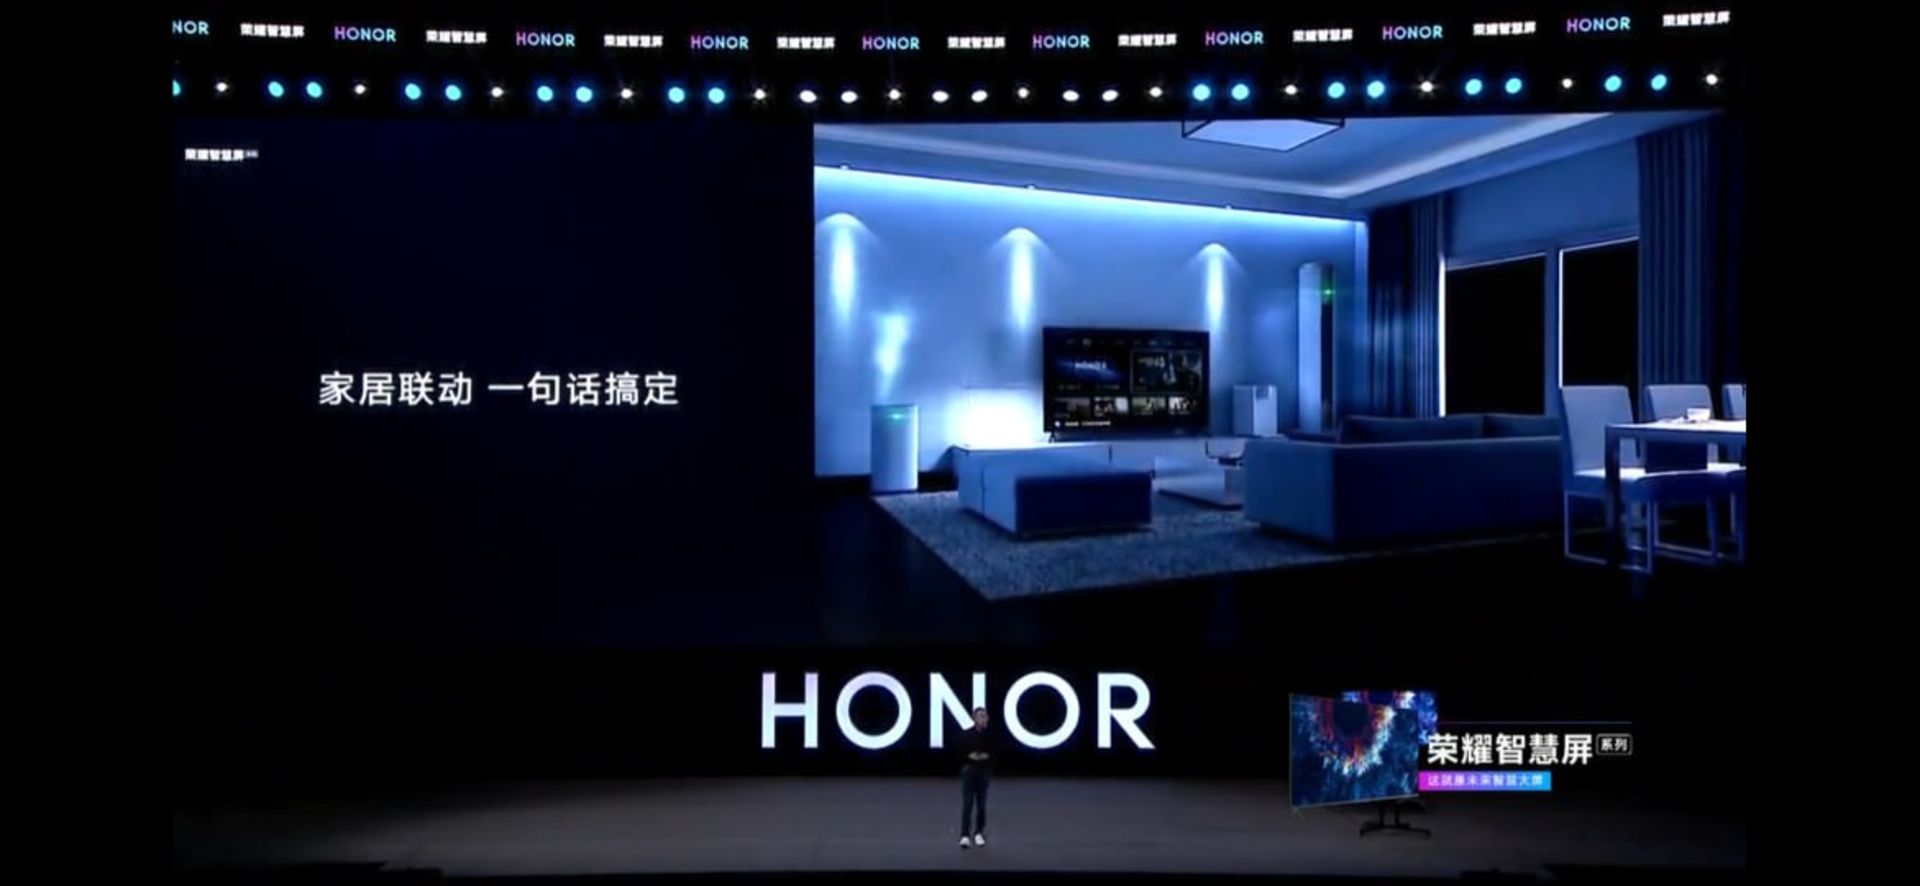 سیستم عامل هارمونی تلویزیون آنر هواوی / huawei honor tv harmonyos